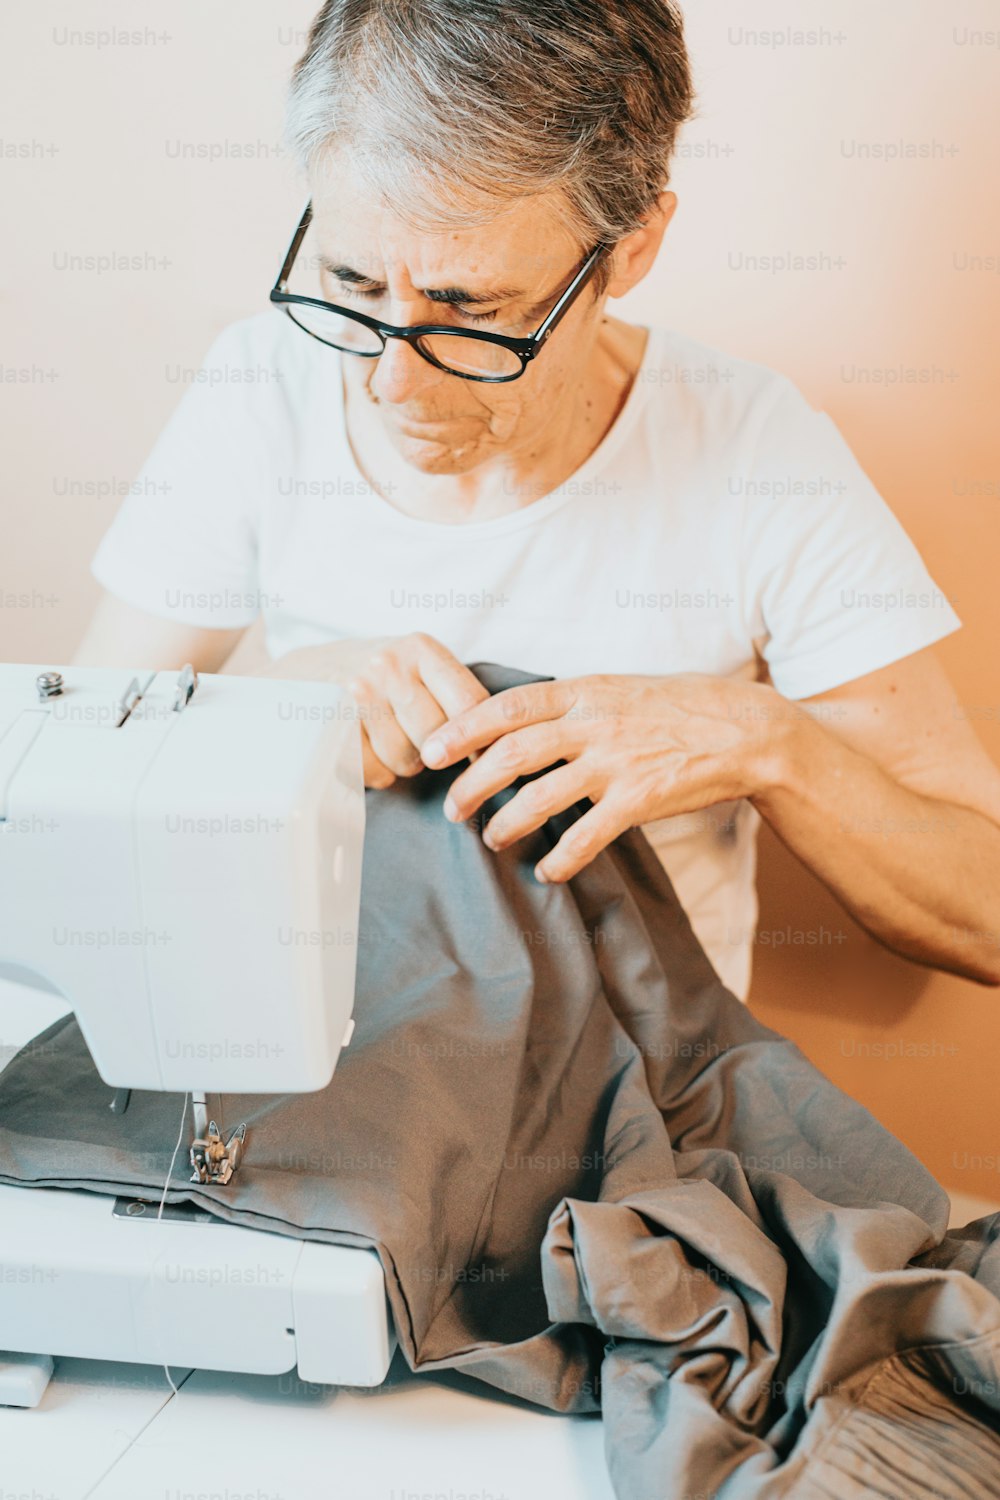 Un uomo sta lavorando su una macchina da cucire